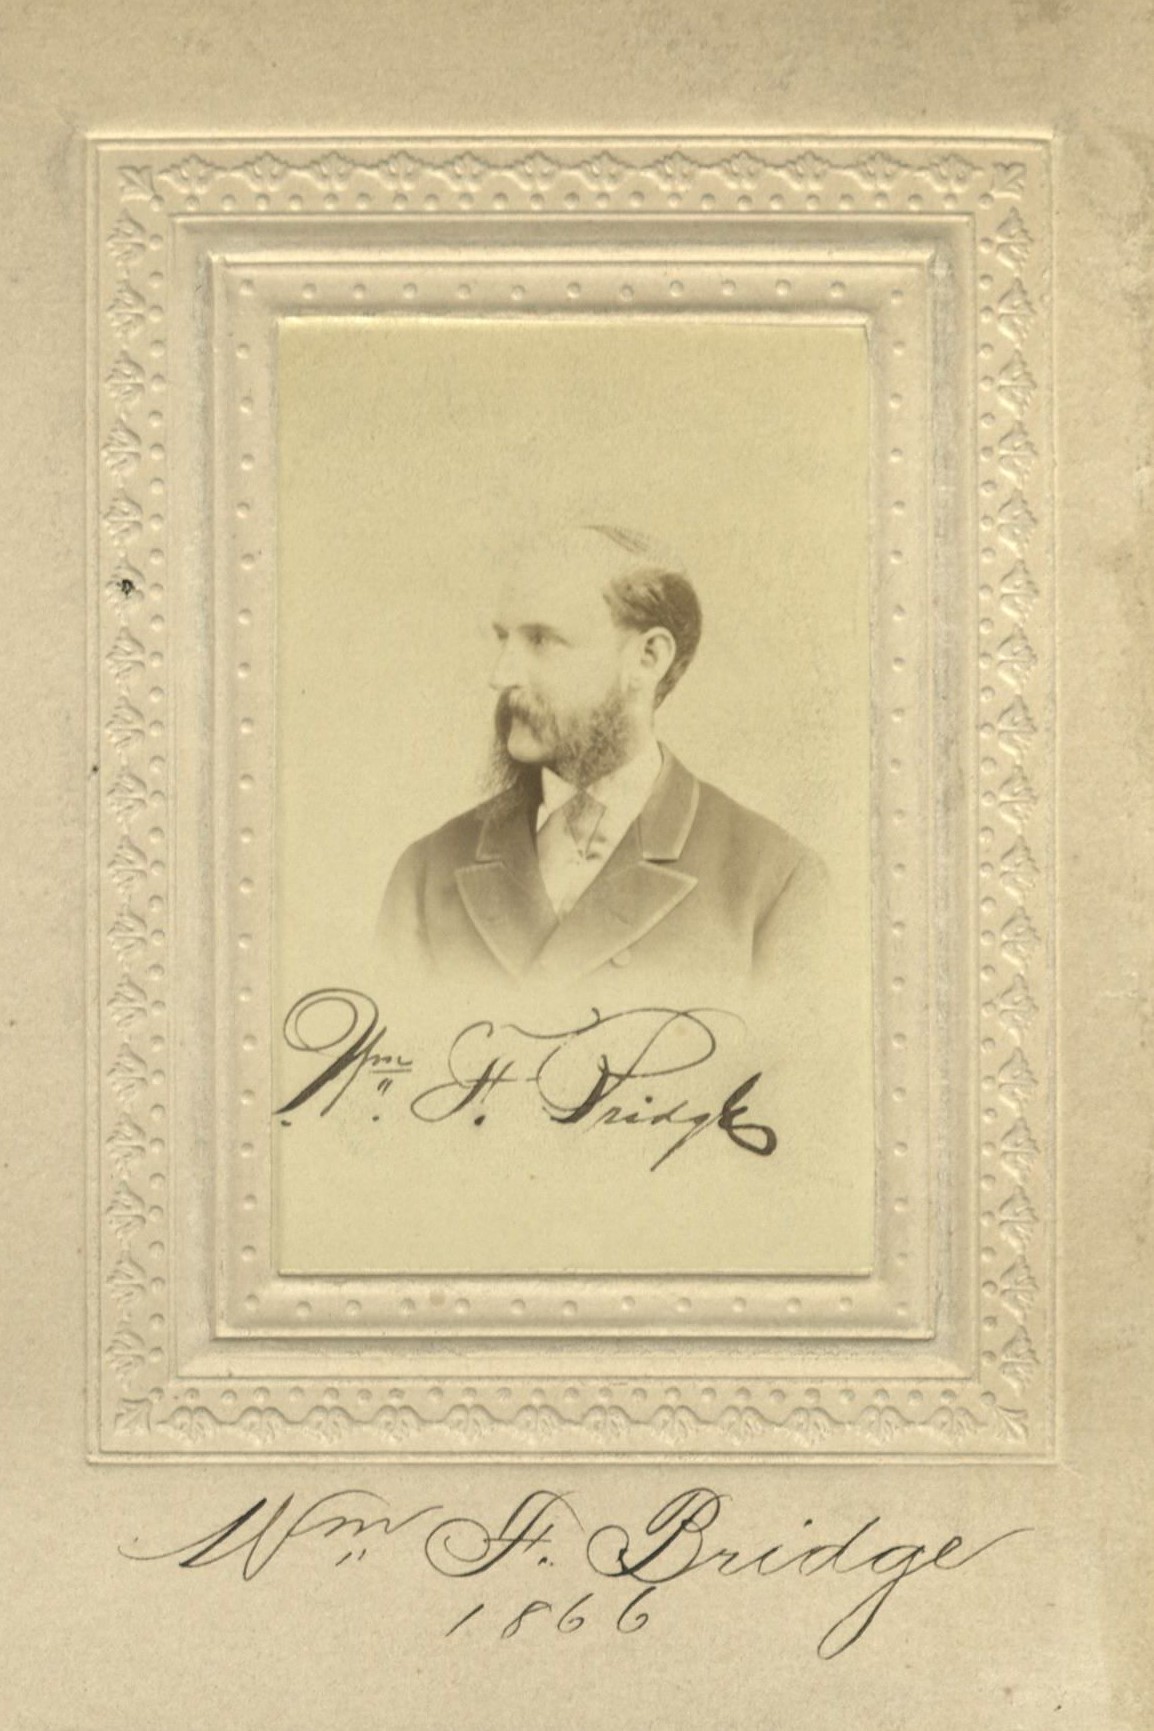 Member portrait of William F. Bridge